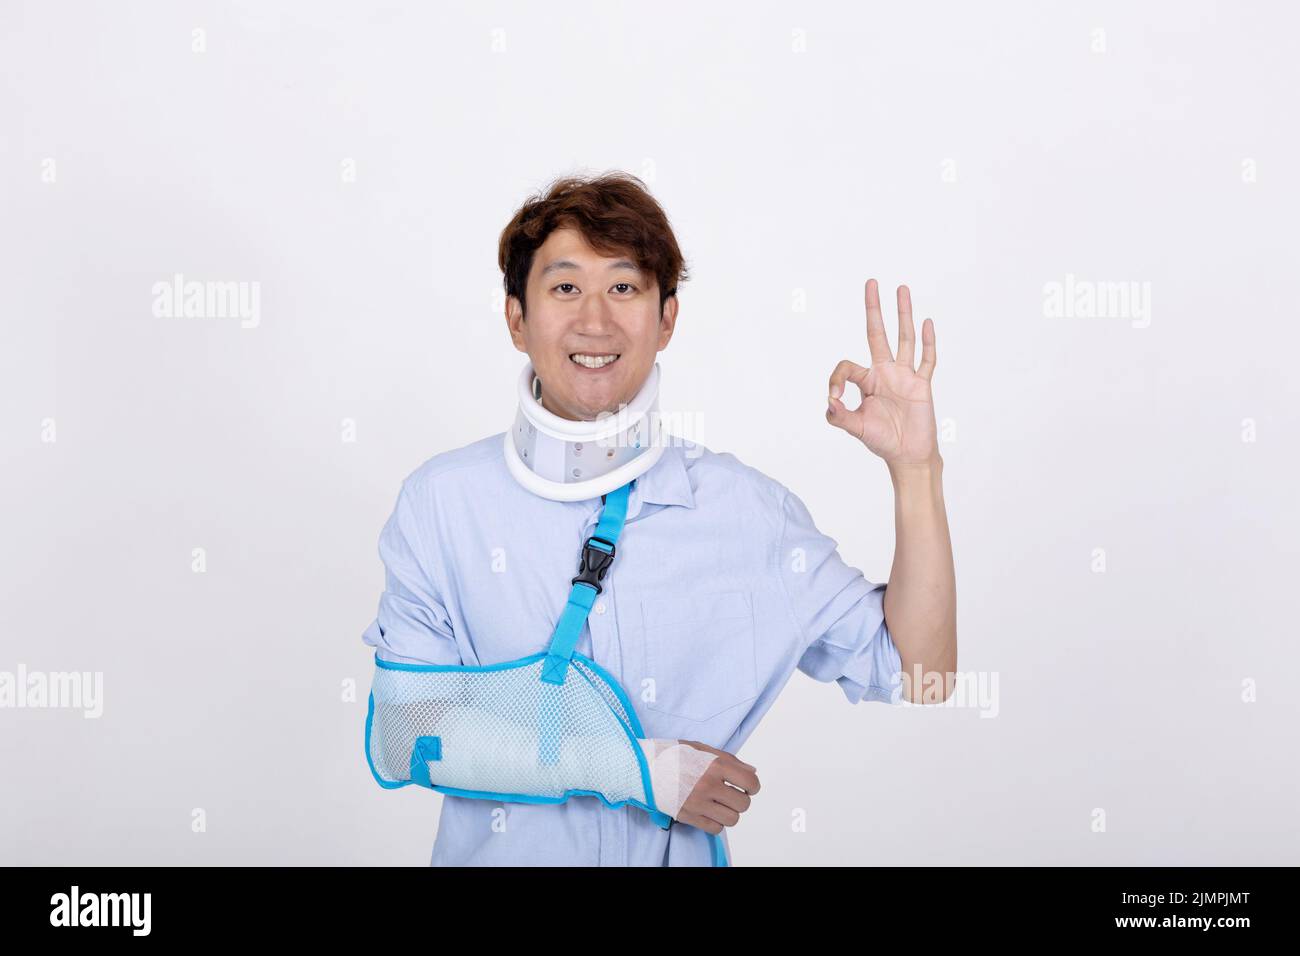 Porträt eines lächelnden asiatischen Mannes mit gebrochenem Arm und Hals Gefühl zeigt okay Zeichen Geste isoliert auf weißem Hintergrund Kopie Raum Stockfoto